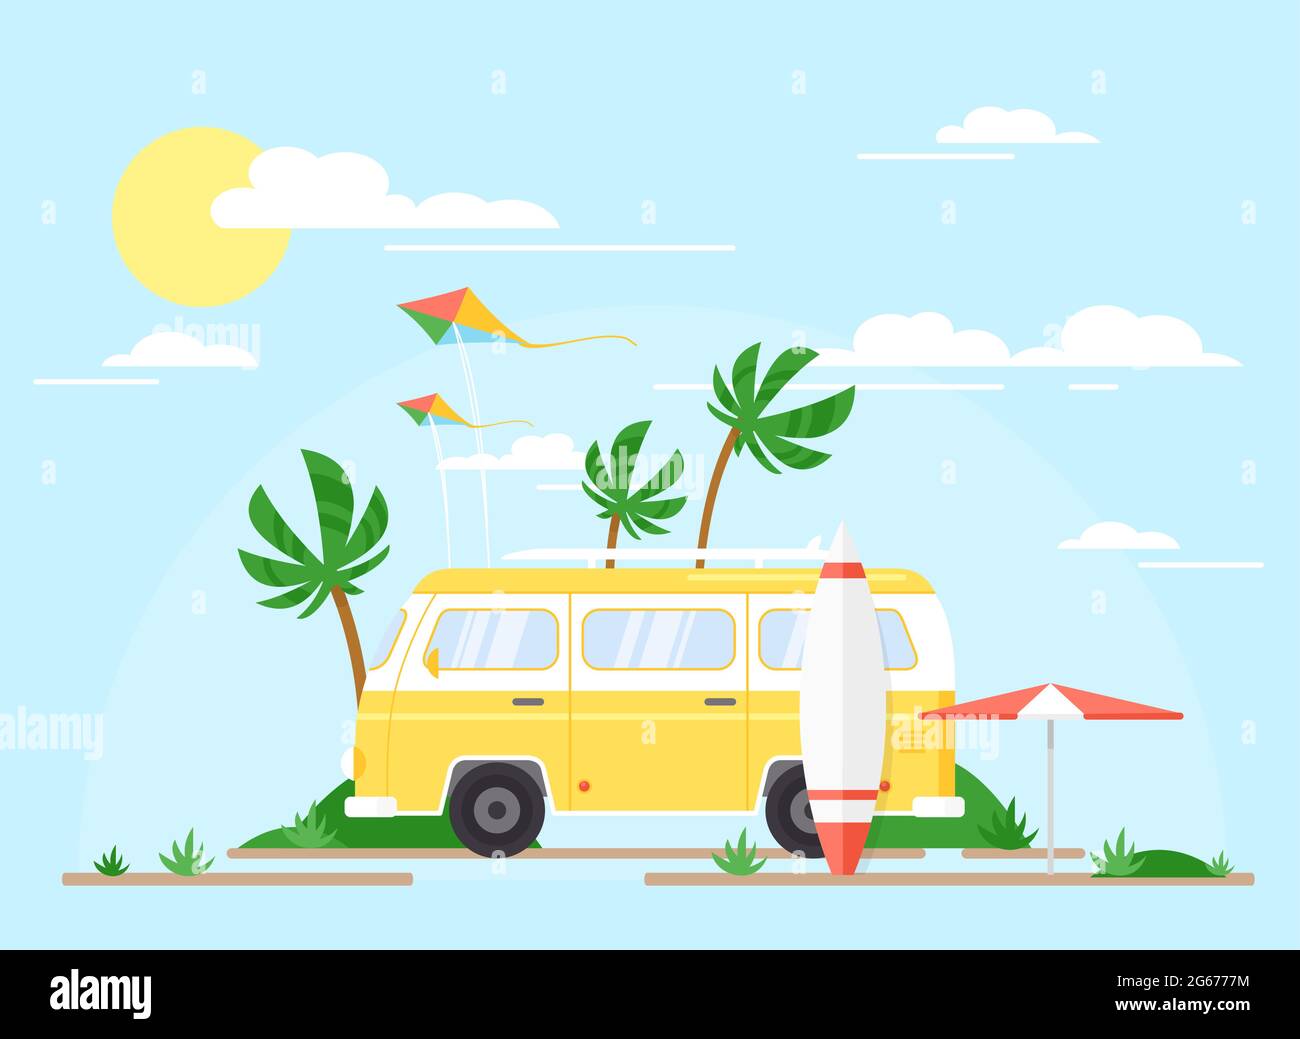 Illustrazione vettoriale del bus di surf sulla spiaggia di palme, concetto estivo. Trailer giallo d'epoca con surf board, concept di viaggio, estate. Illustrazione Vettoriale